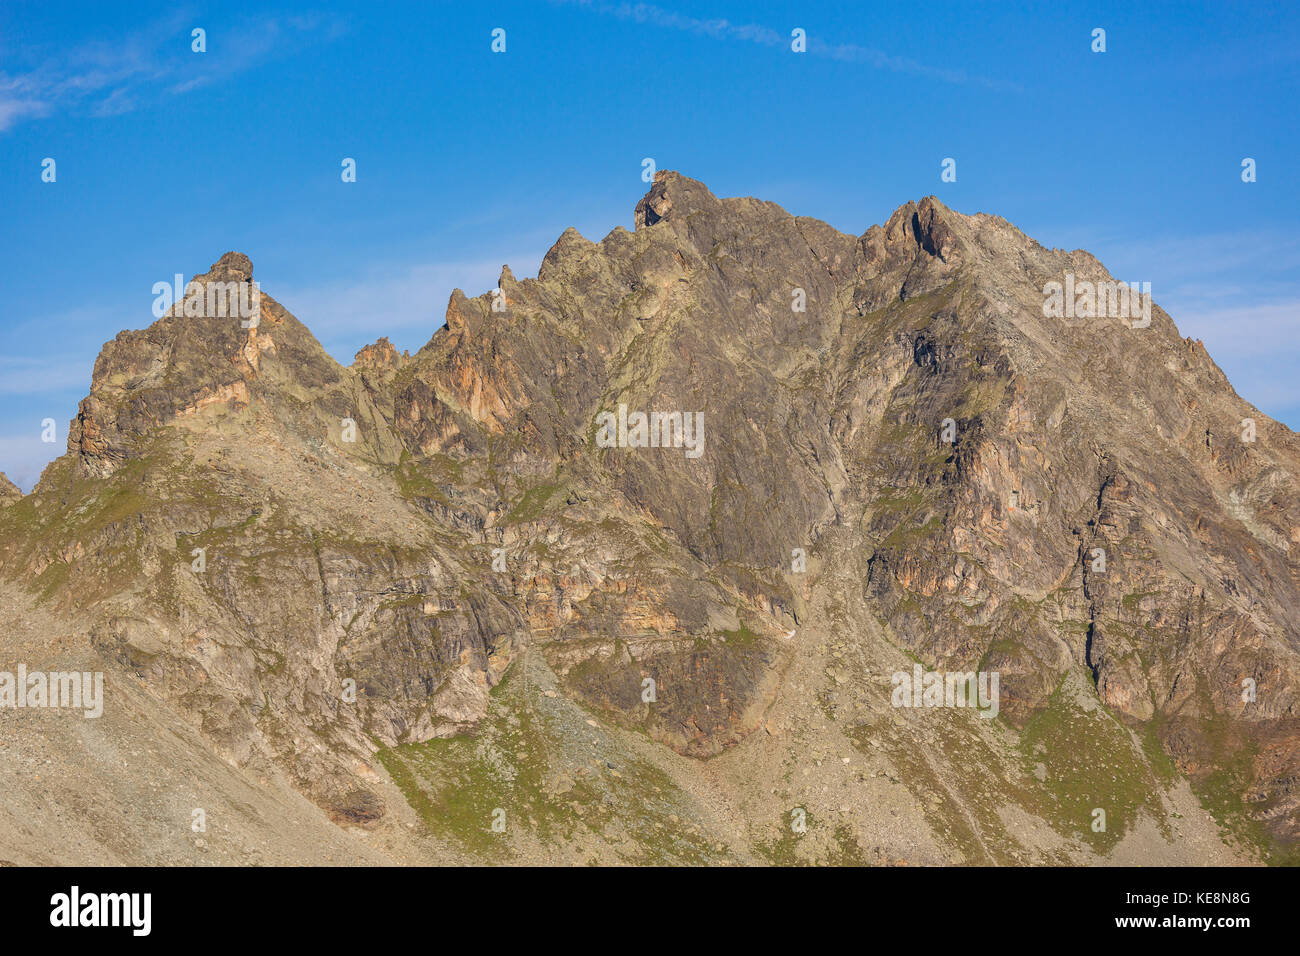 Moiry valle, Suiza - una cresta rocosa en los Alpes Peninos en el cantón de Valais. Foto de stock